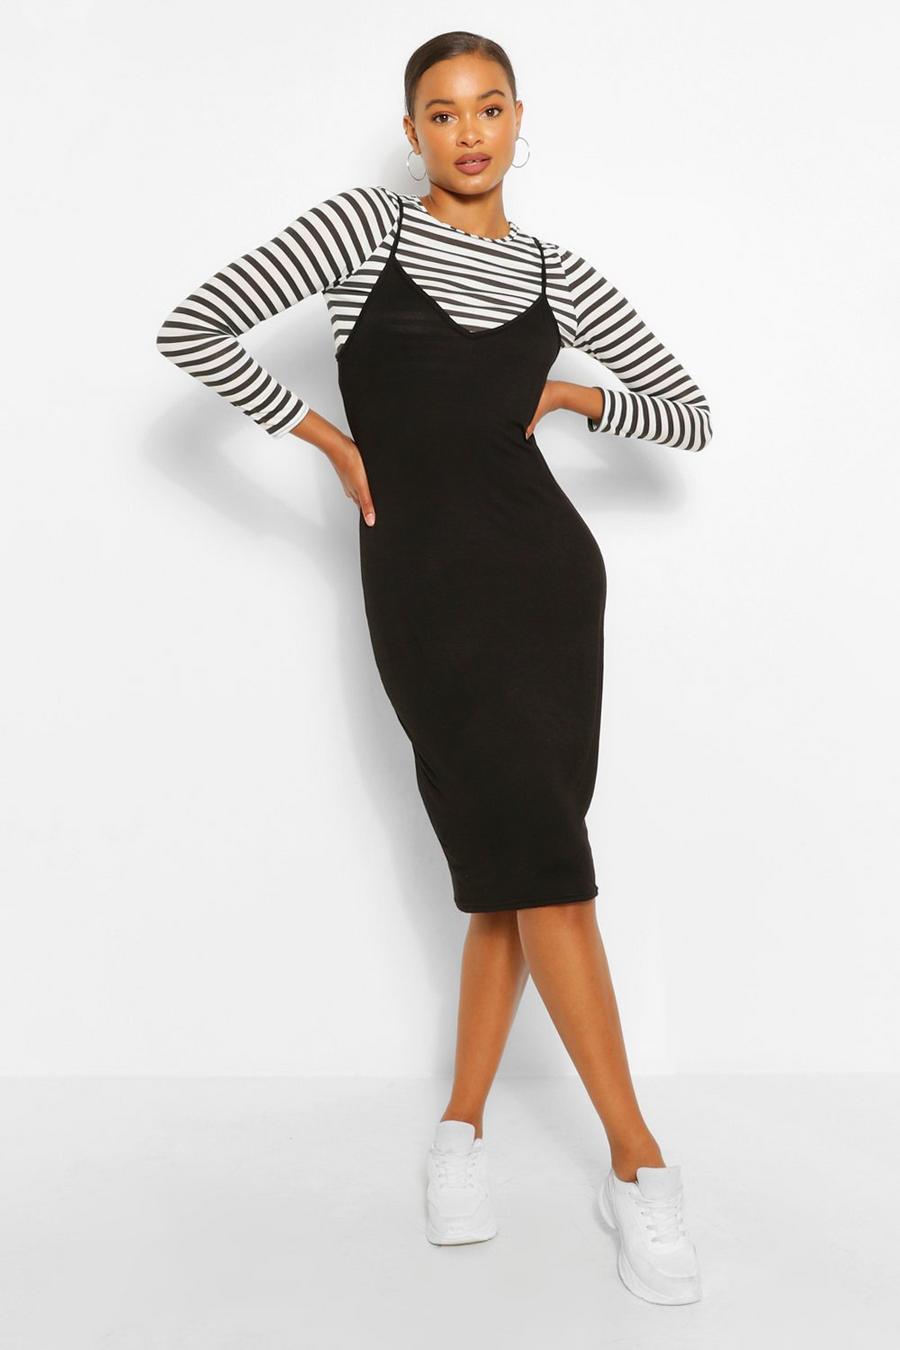 https://media.boohoo.com/i/boohoo/fzz51060_black_xl/black-stripe-long-sleeve-t-shirt-&-midi-slip-dress/?w=900&qlt=default&fmt.jp2.qlt=70&fmt=auto&sm=fit